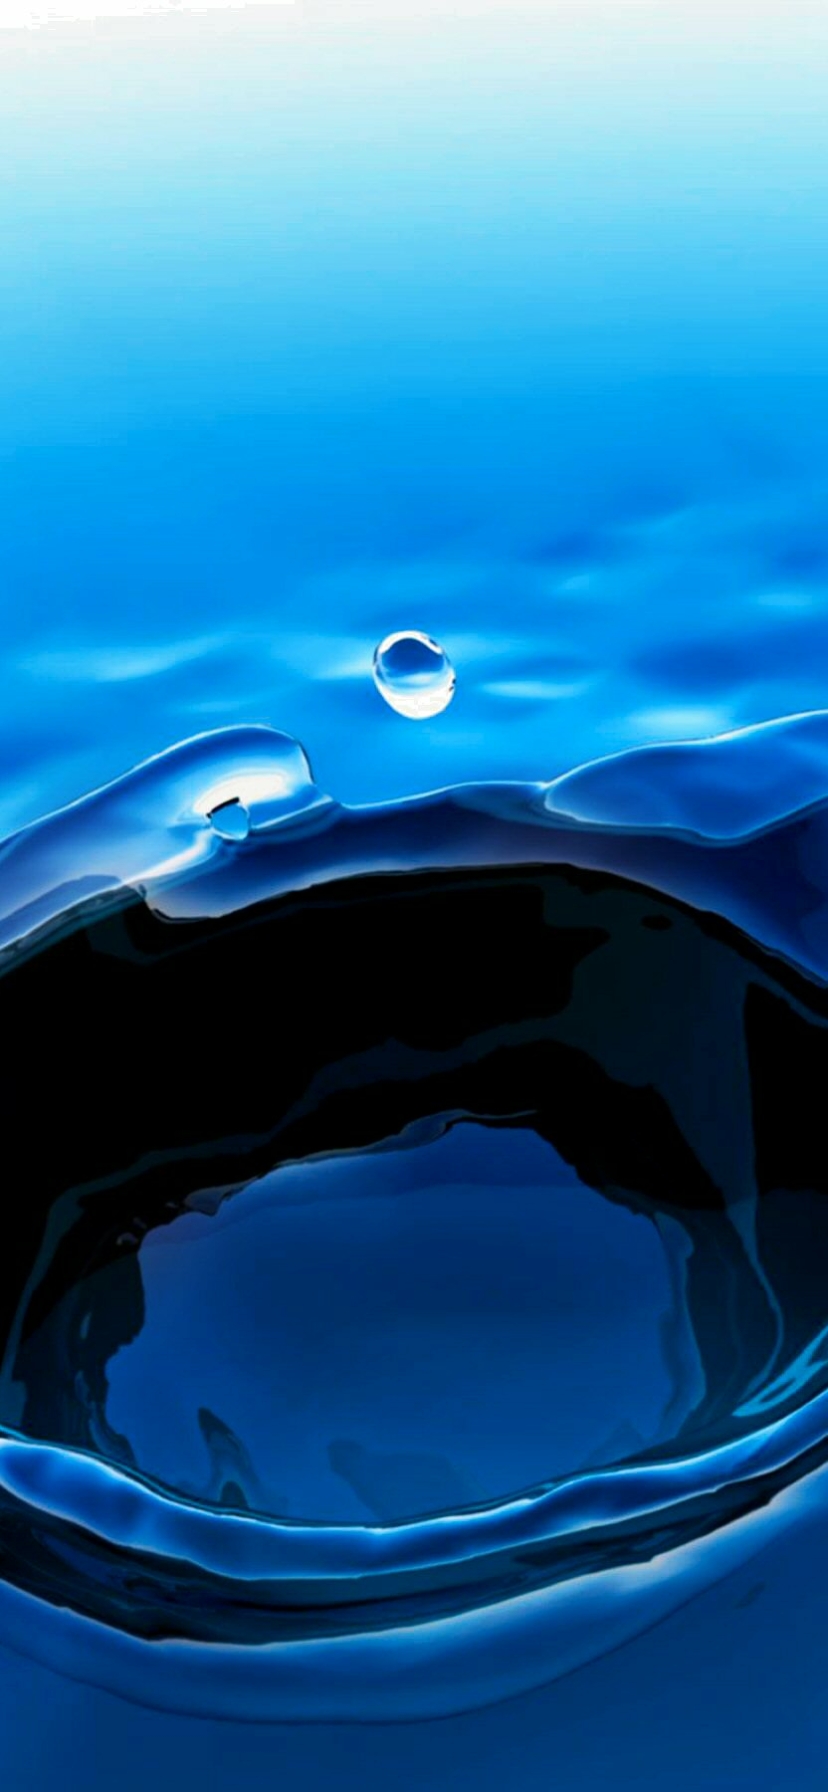 Descarga gratuita de fondo de pantalla para móvil de Agua, Fotografía, Gota De Agua.